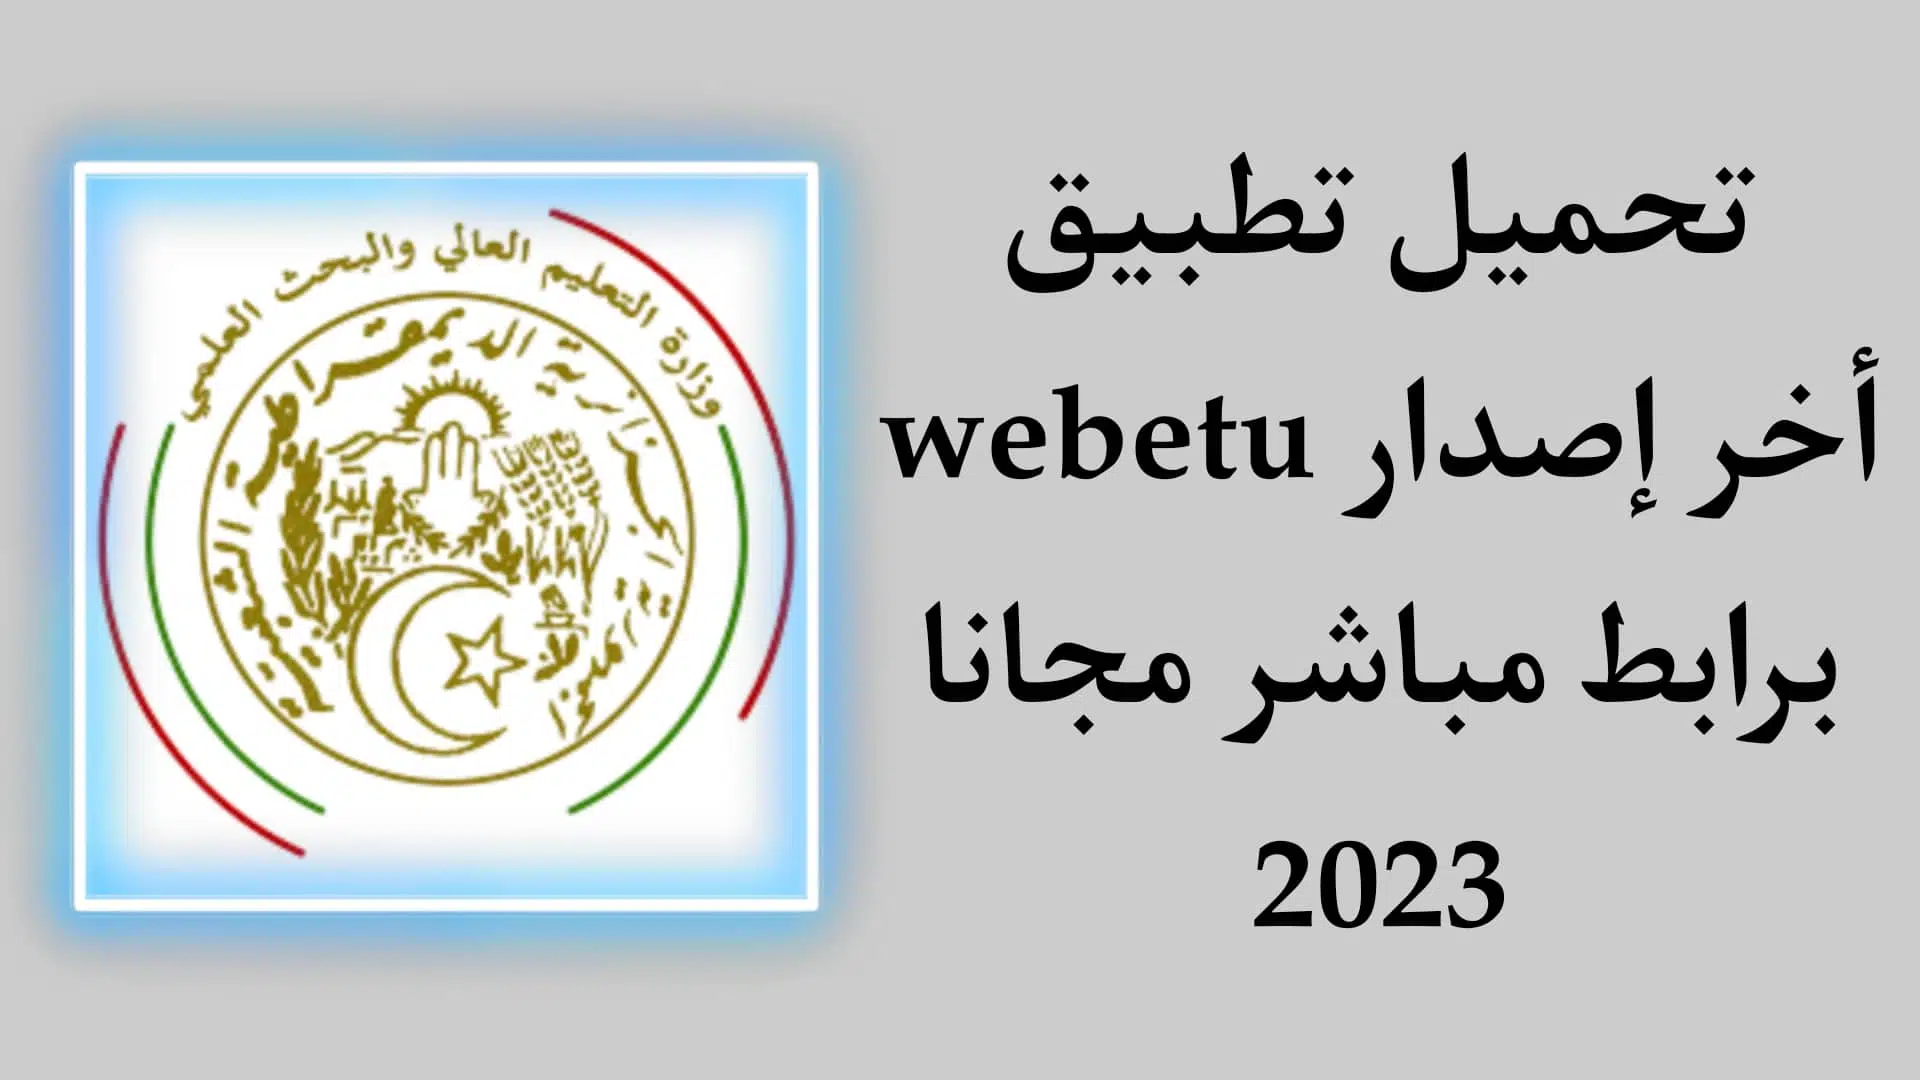 تحميل تطبيق webetu apk بوابة الطالب الجامعي 2023